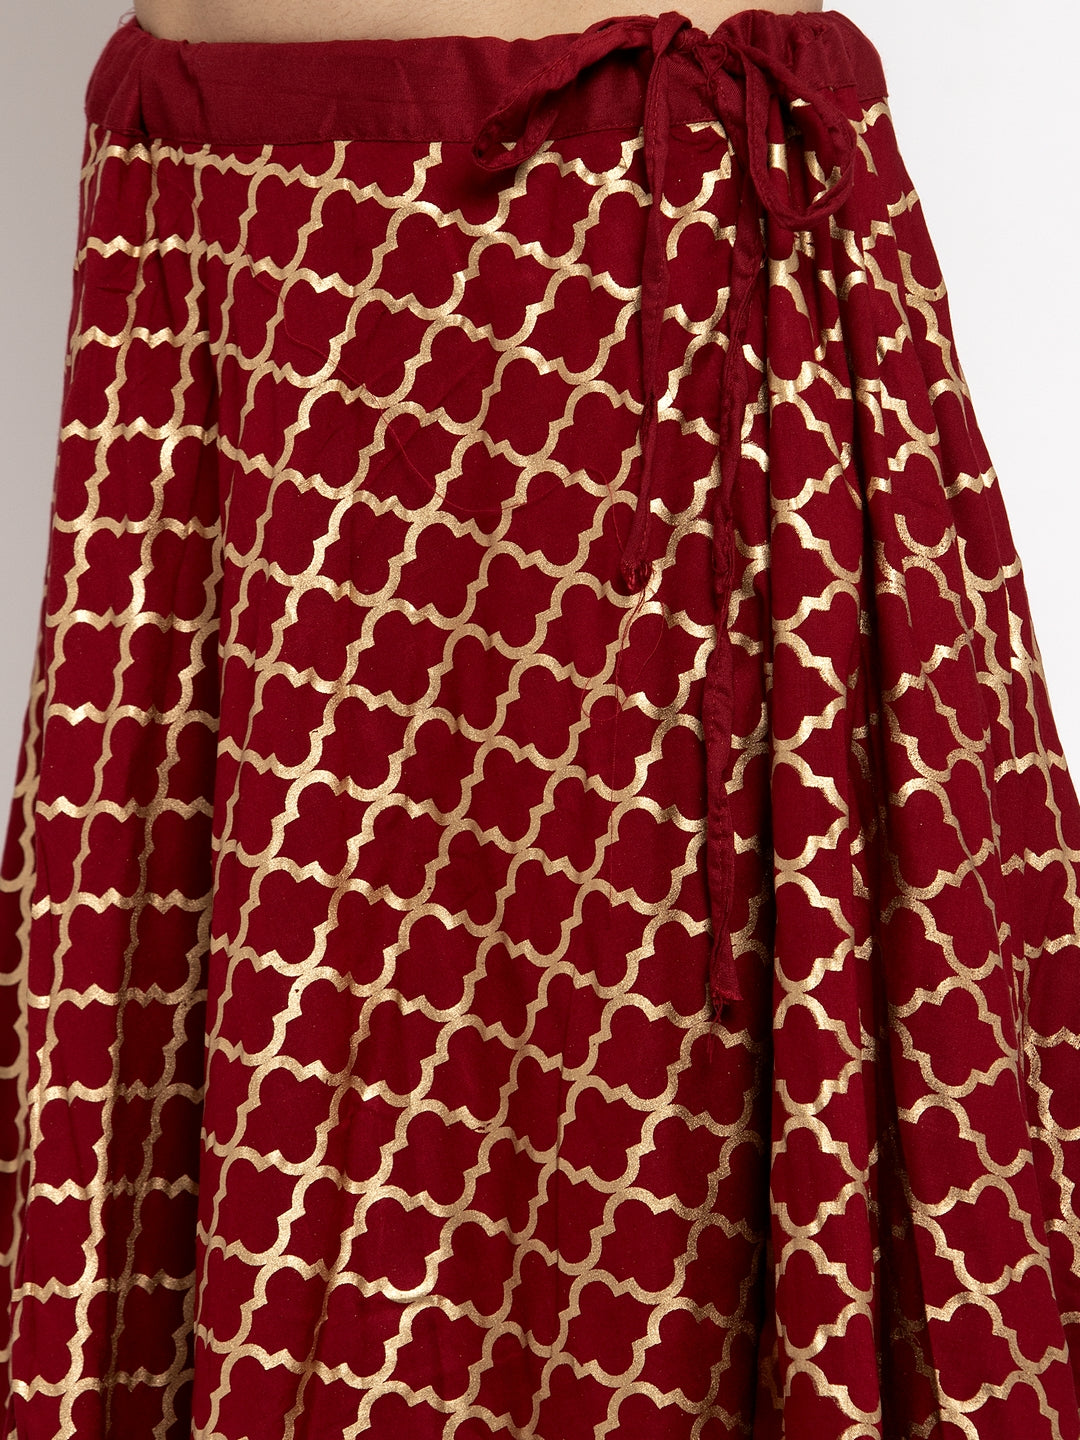 Clora Maroon Printed Rayon Skirt